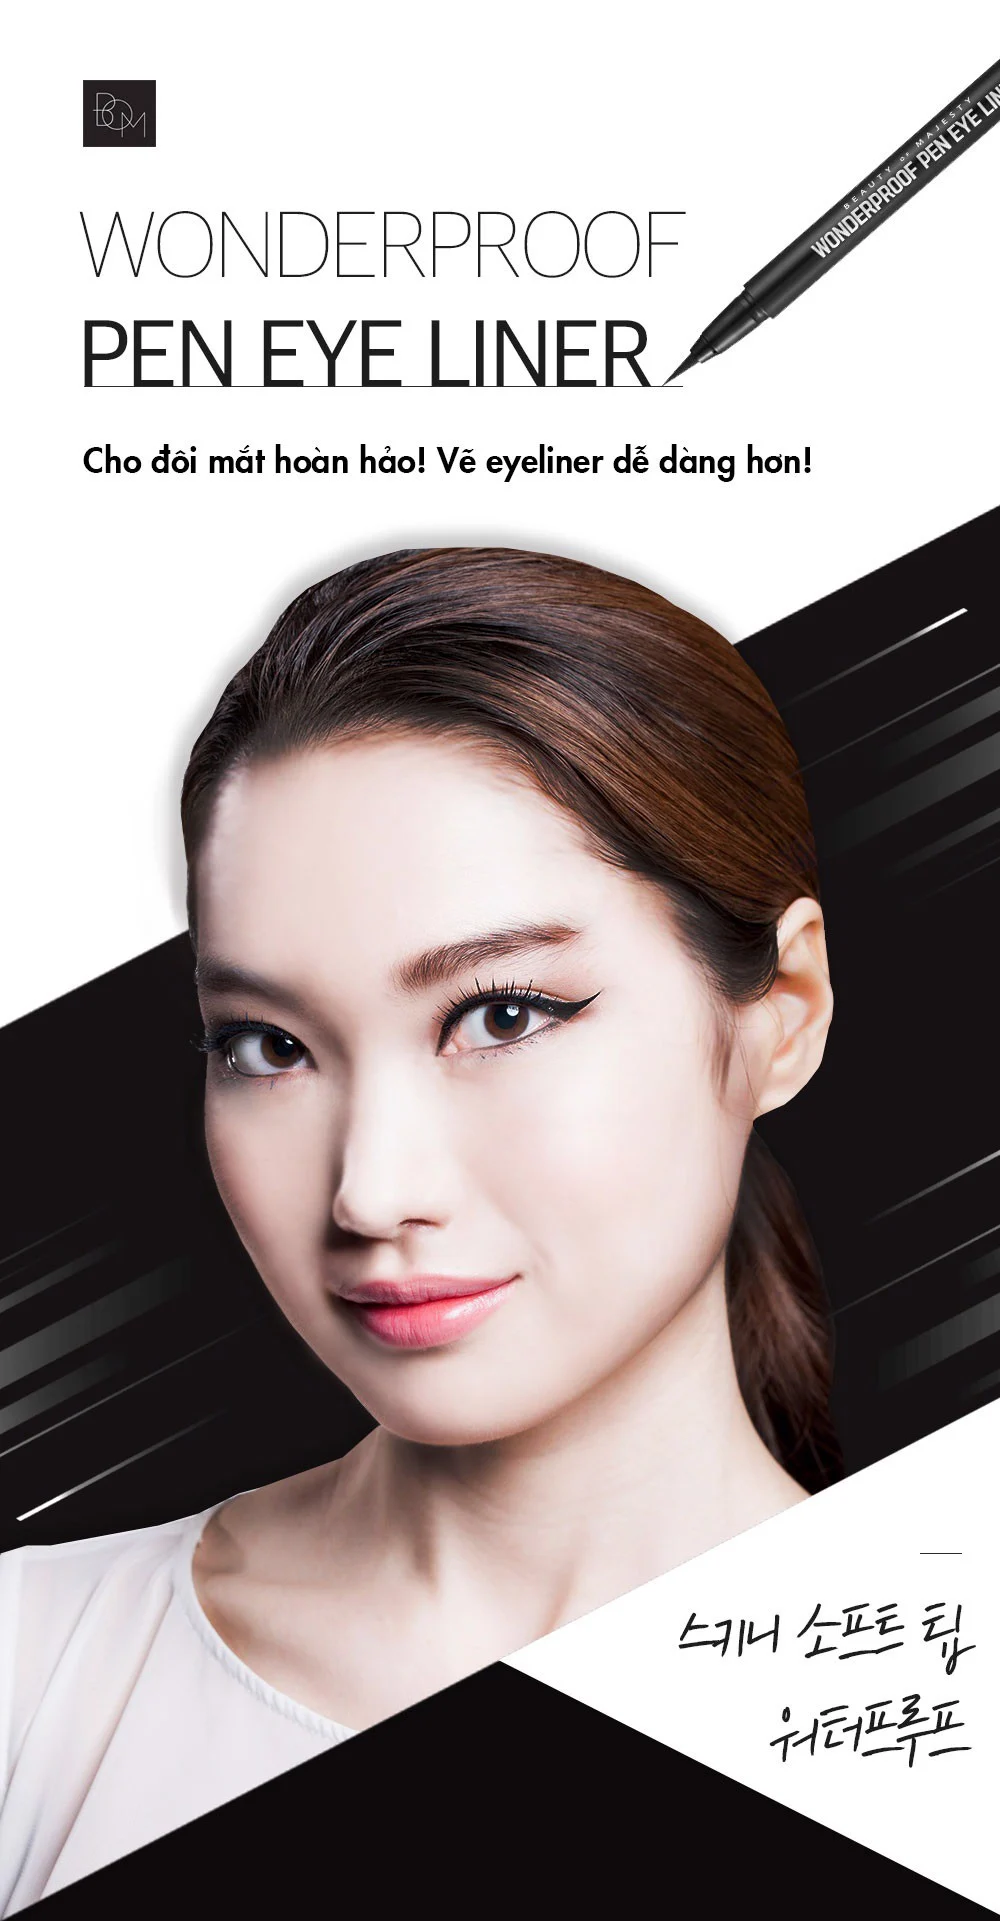 Wonderproof Pen Eyeliner đến từ thương hiệu B.O.M hiện đang đặc biệt được ưa chuộng tại Hàn Quốc vì dễ kẻ lại lâu trôi.